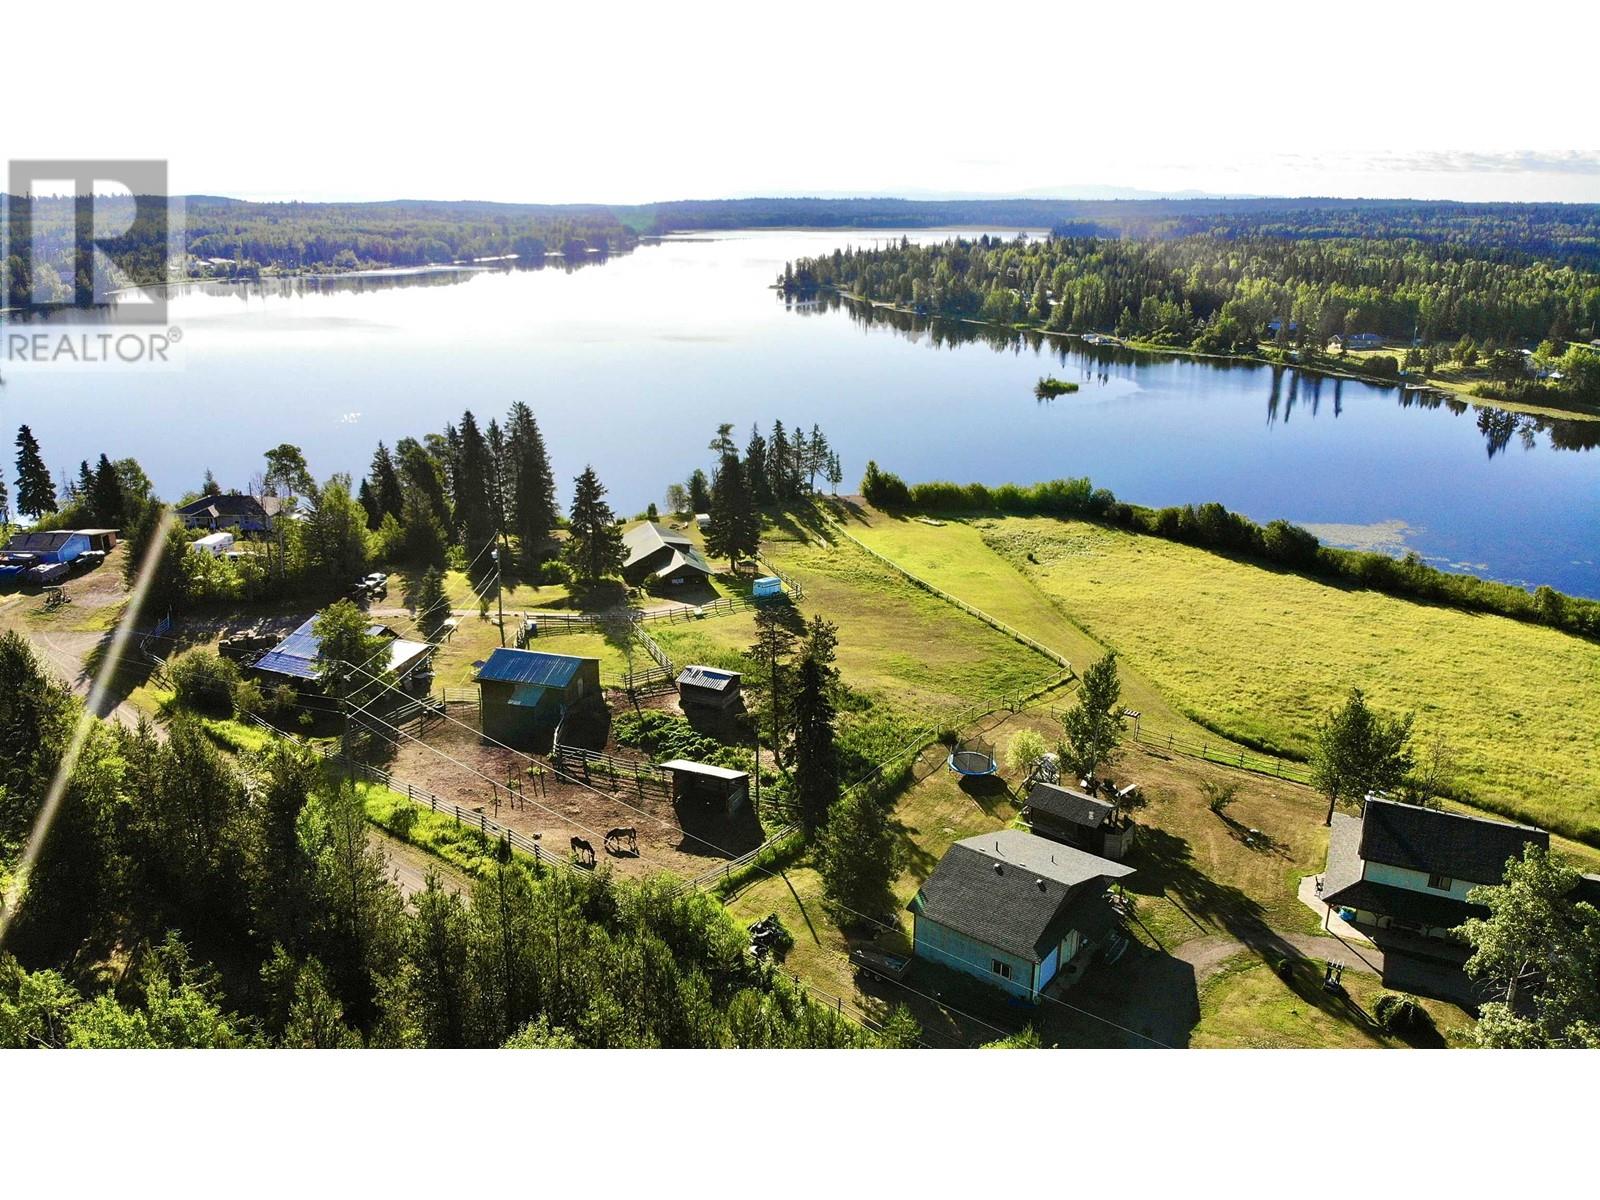 Karen Land Hipcamp In Williams Lake, British Columbia, 54% OFF